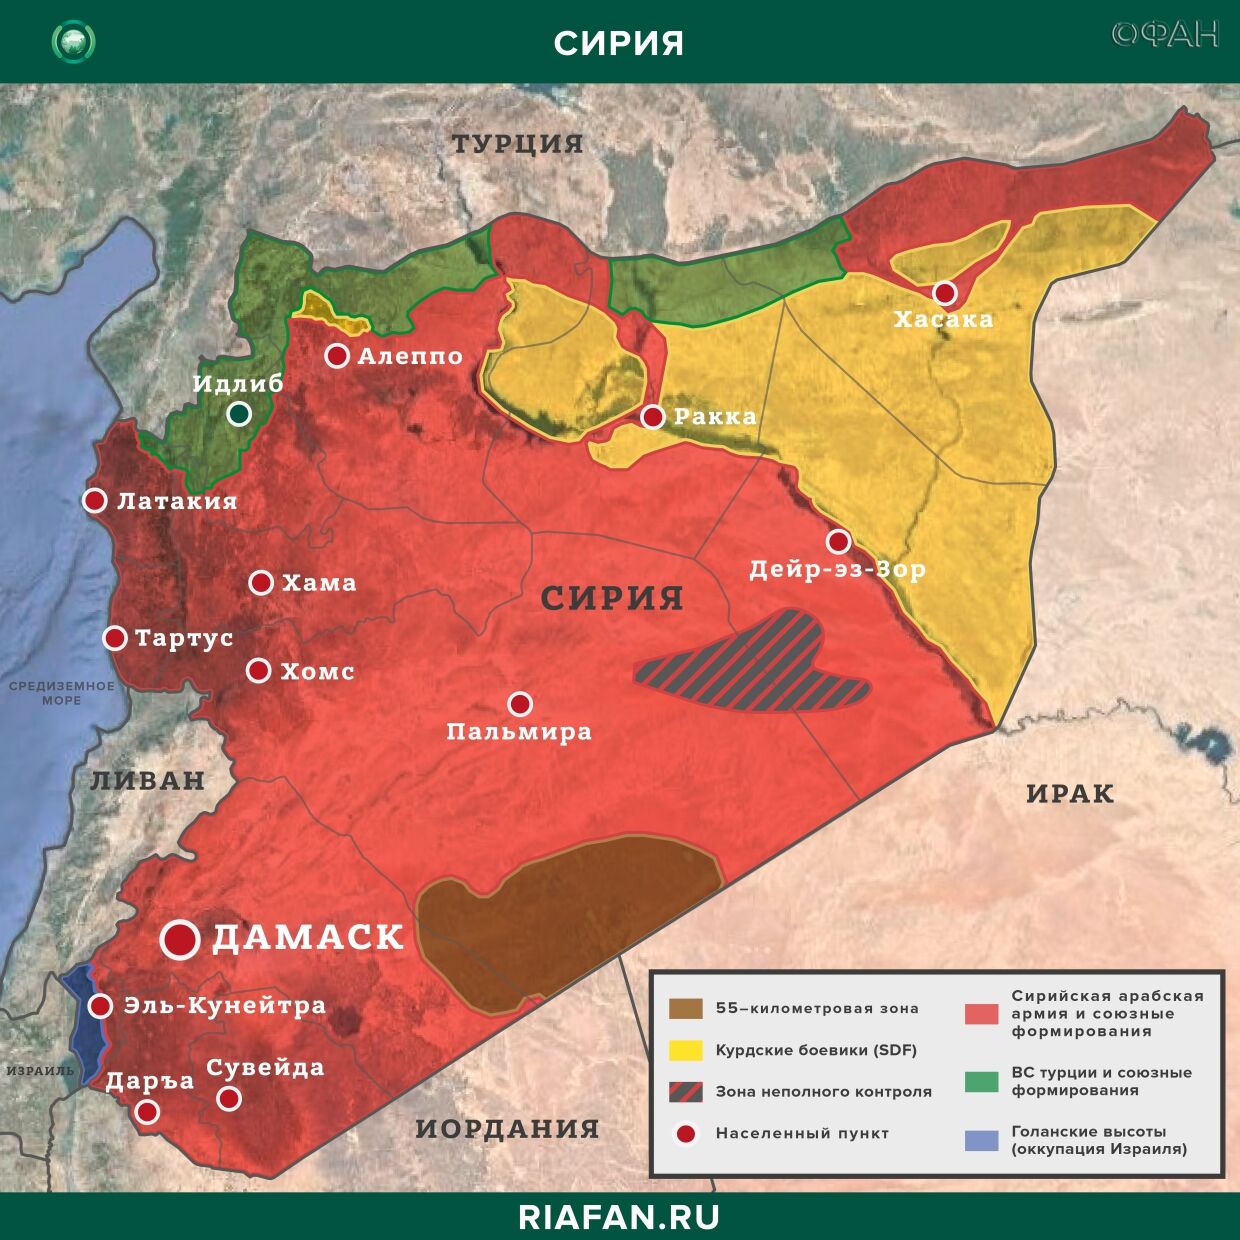 Последние новости Сирии. Сегодня 27 апреля 2020: ПВО Сирии отразили ракетную атаку сирия